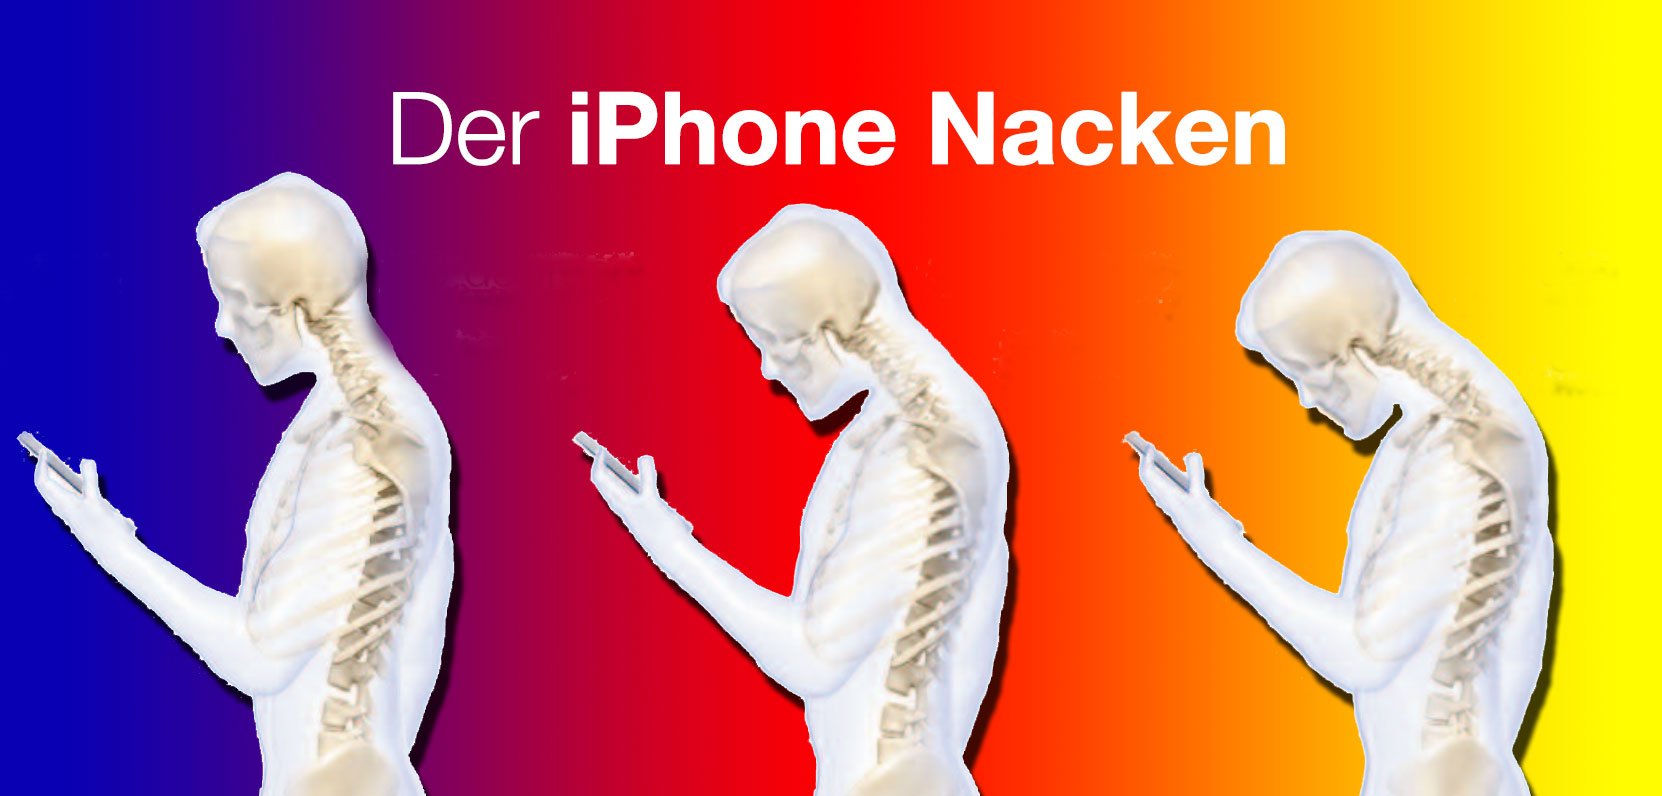 Ärzte warnen vor iPhone Nacken! 8